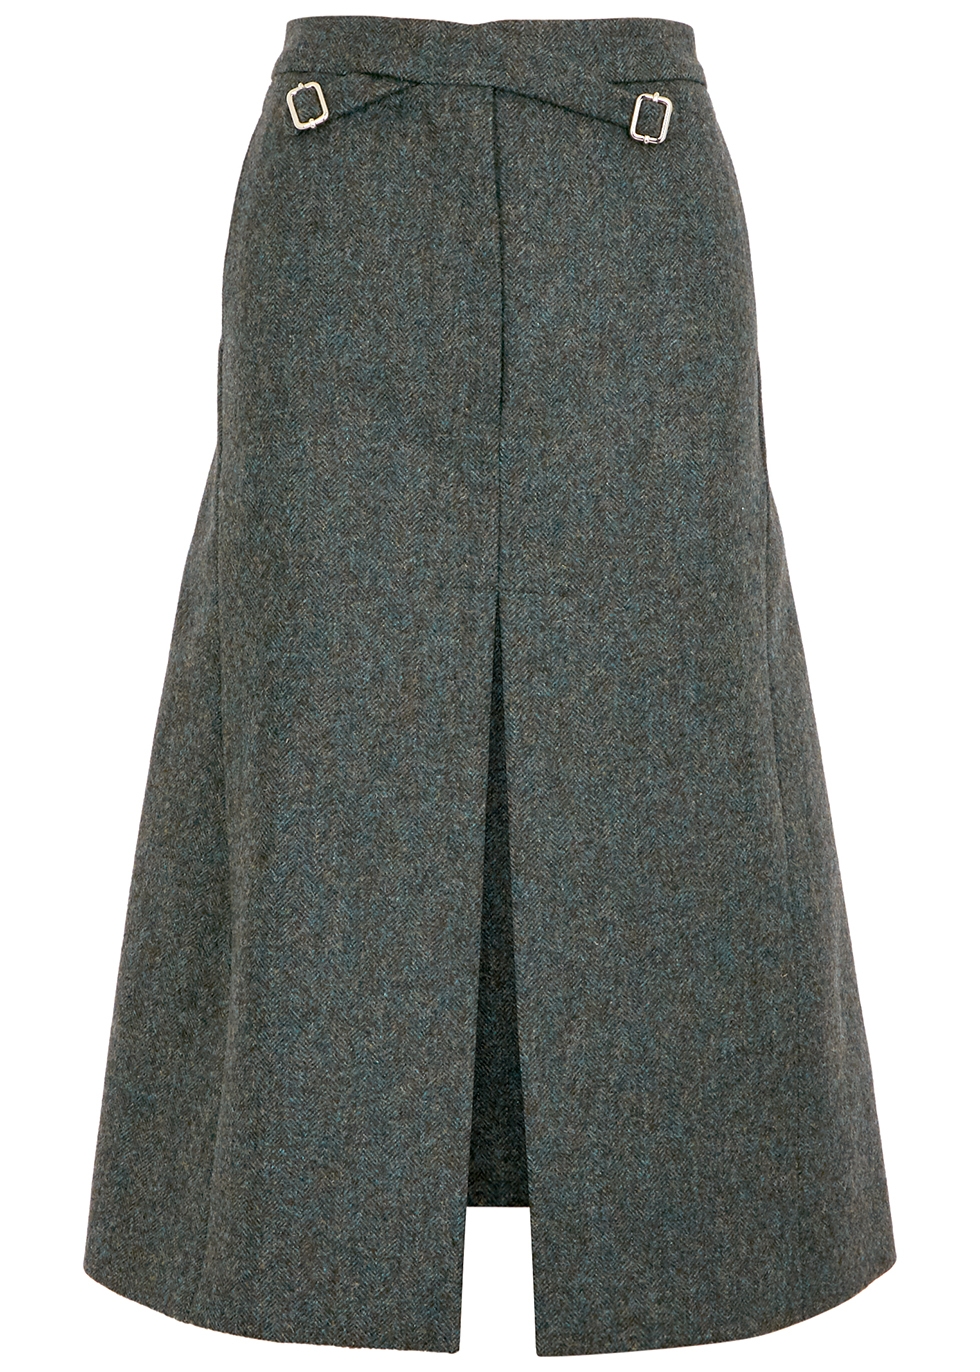 Croix green herringbone wool midi skirt